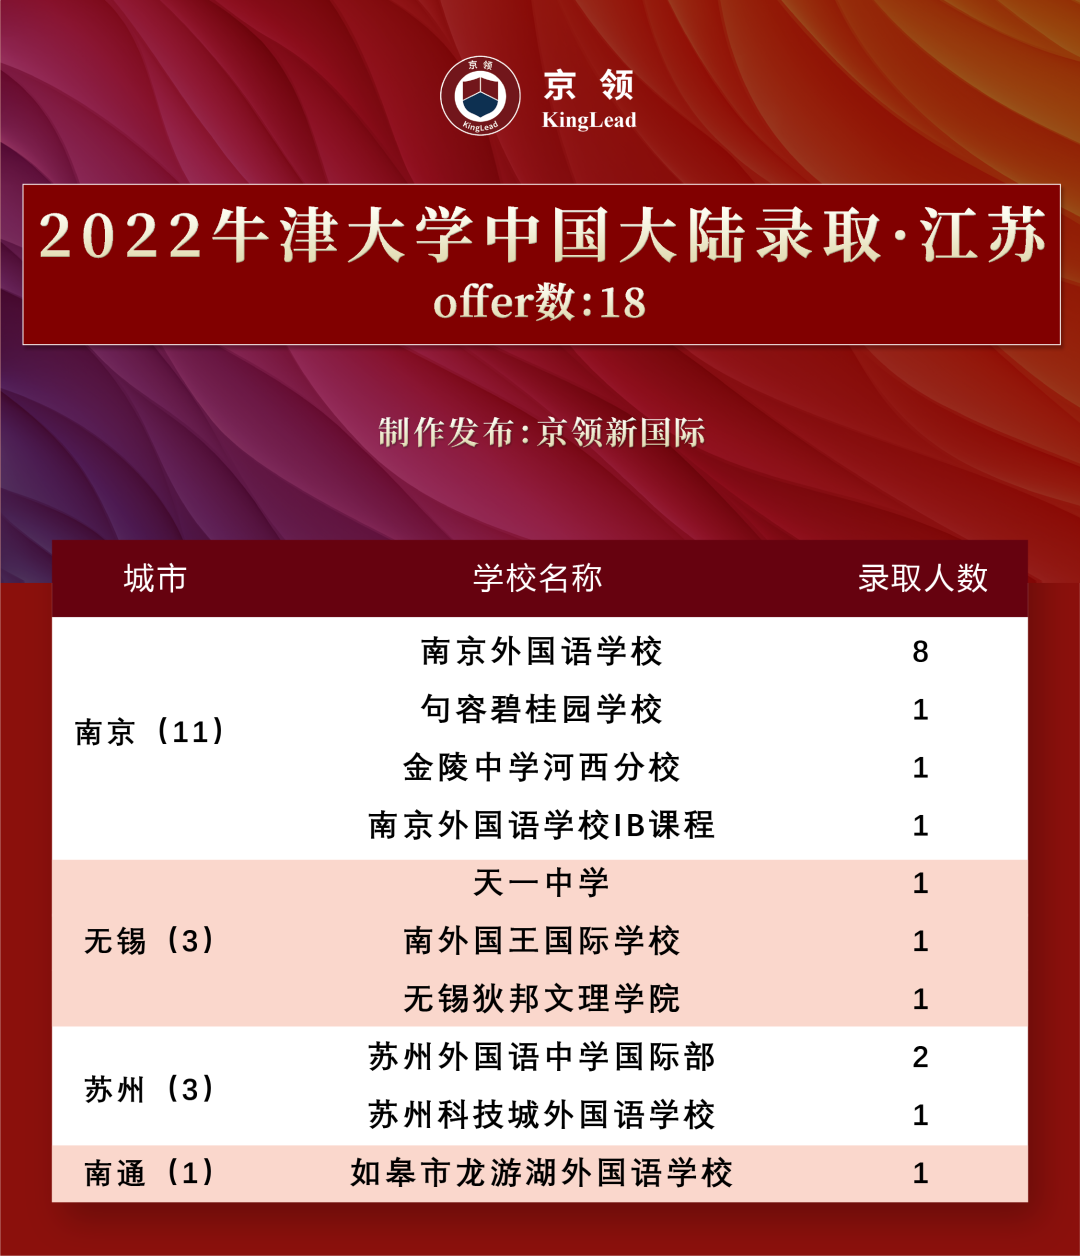 2022级中国学子170枚牛津offer，分别被这些专业所录取  数据 牛津大学 第5张